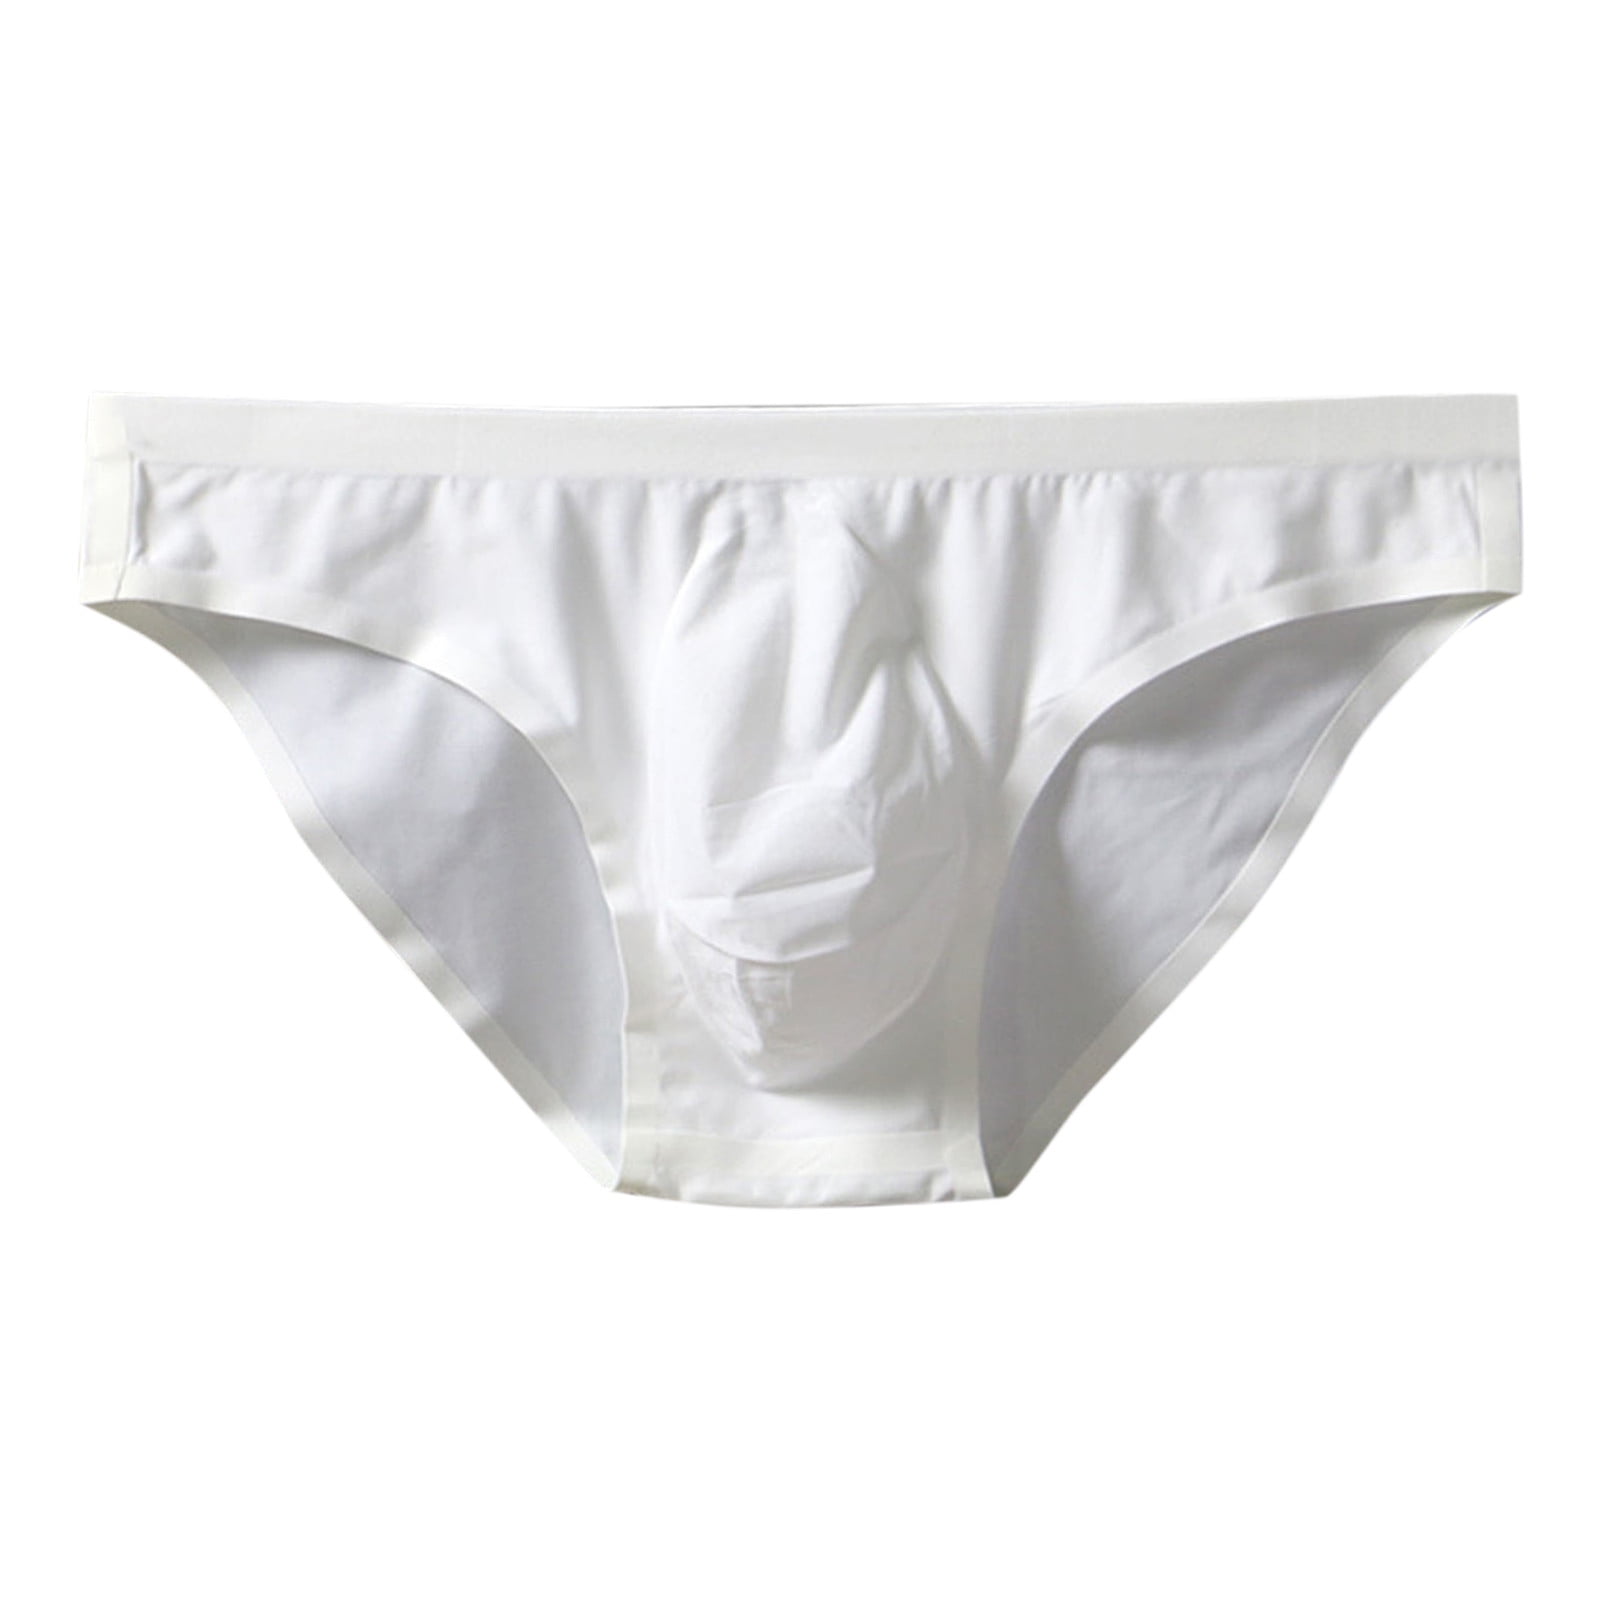 zuwimk Mens Underwear ,Men's Trunks Underwear Comfy Cotton Boxer Briefs  White,M 